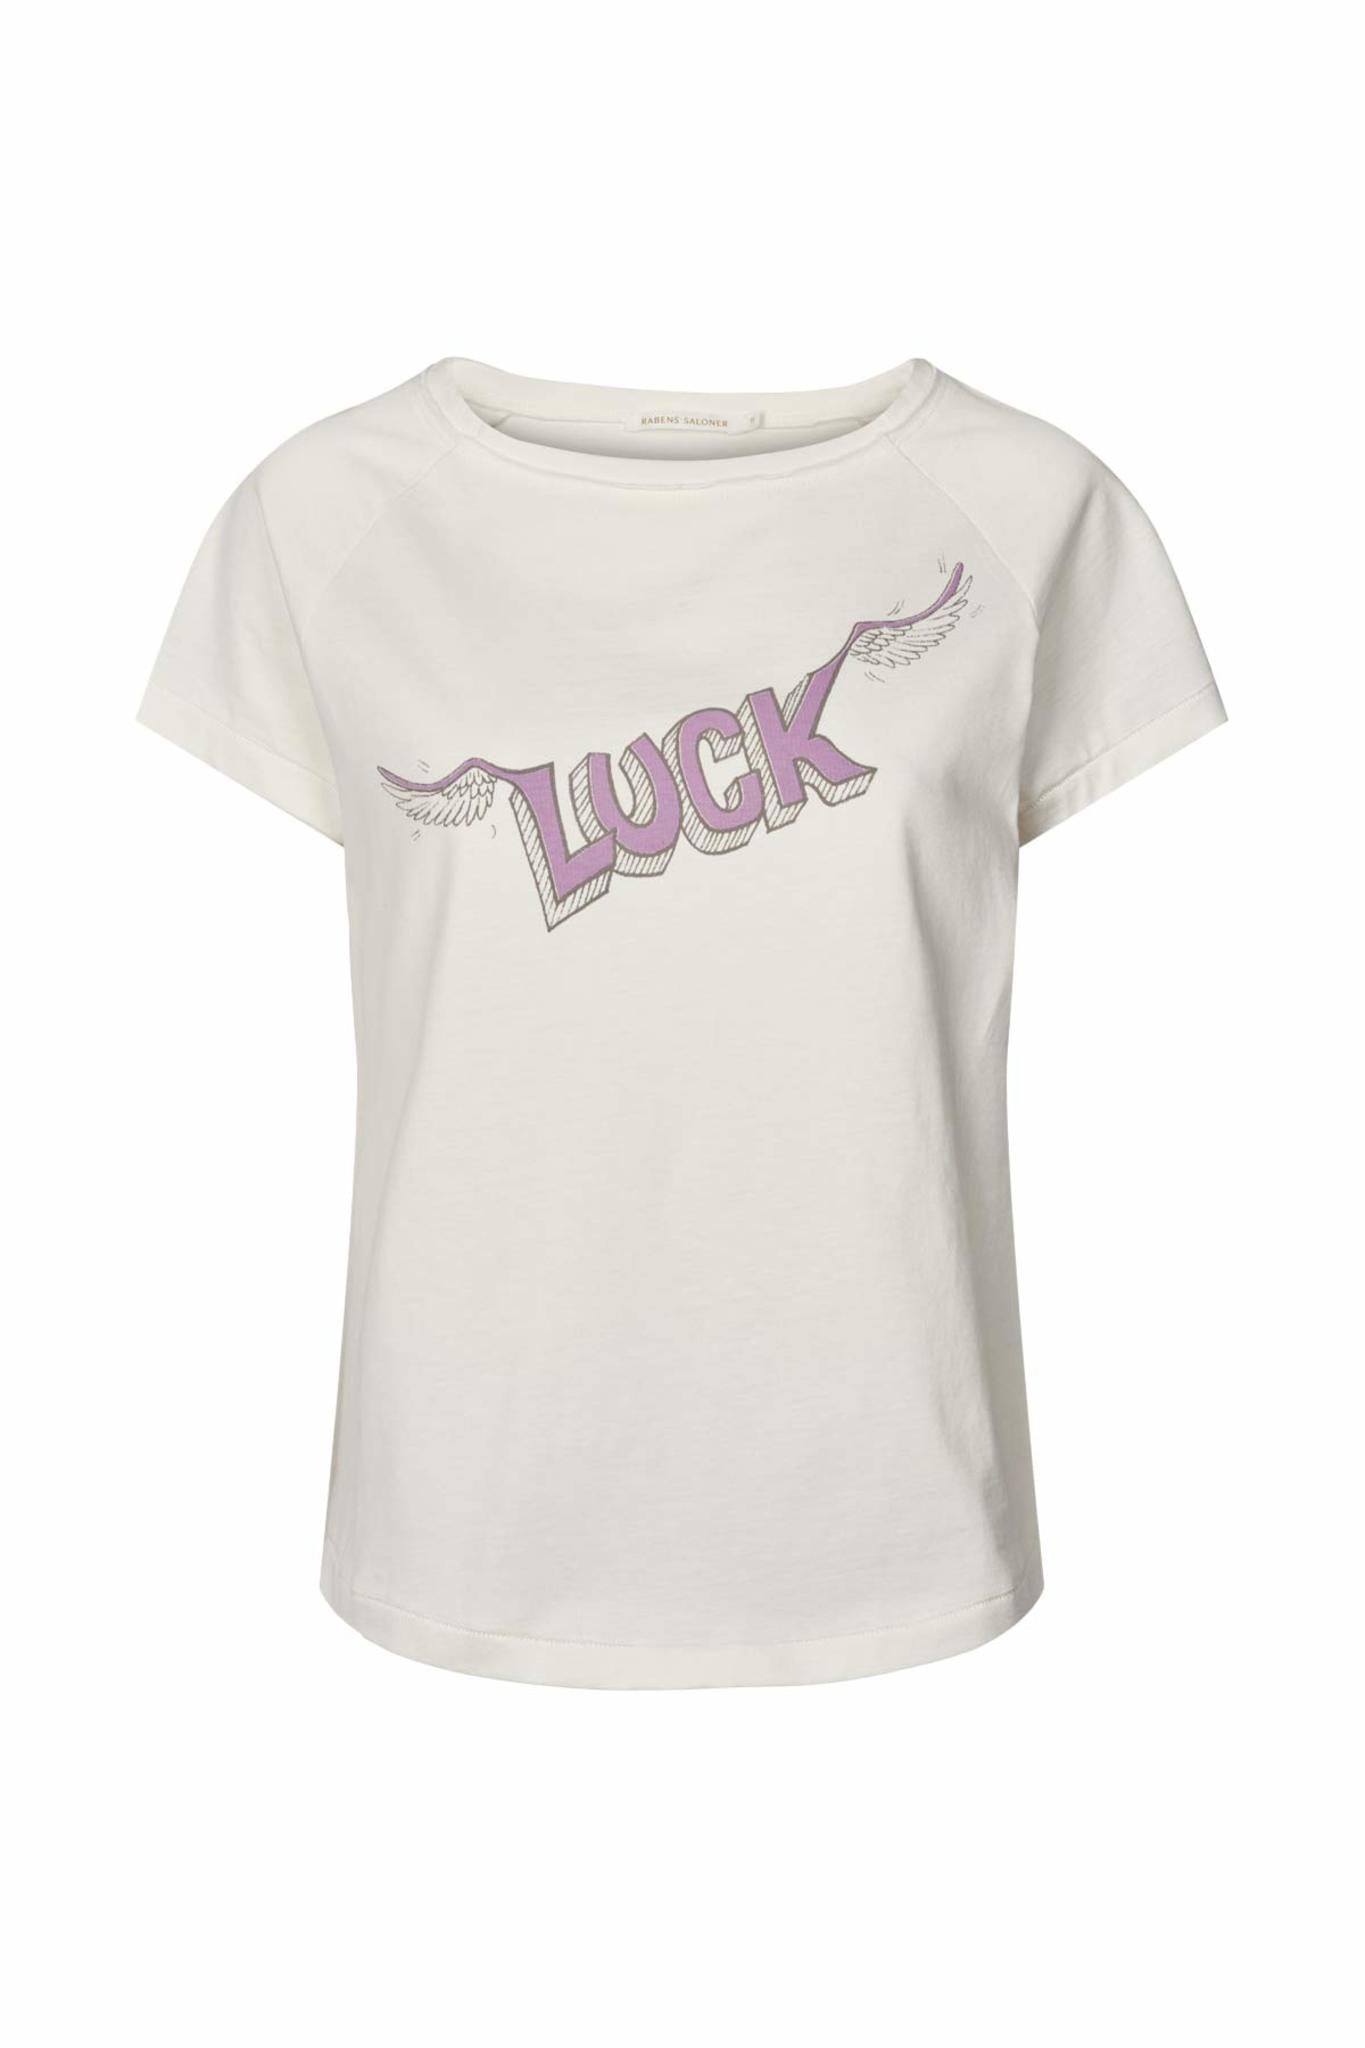 Sally Luck T Shirt